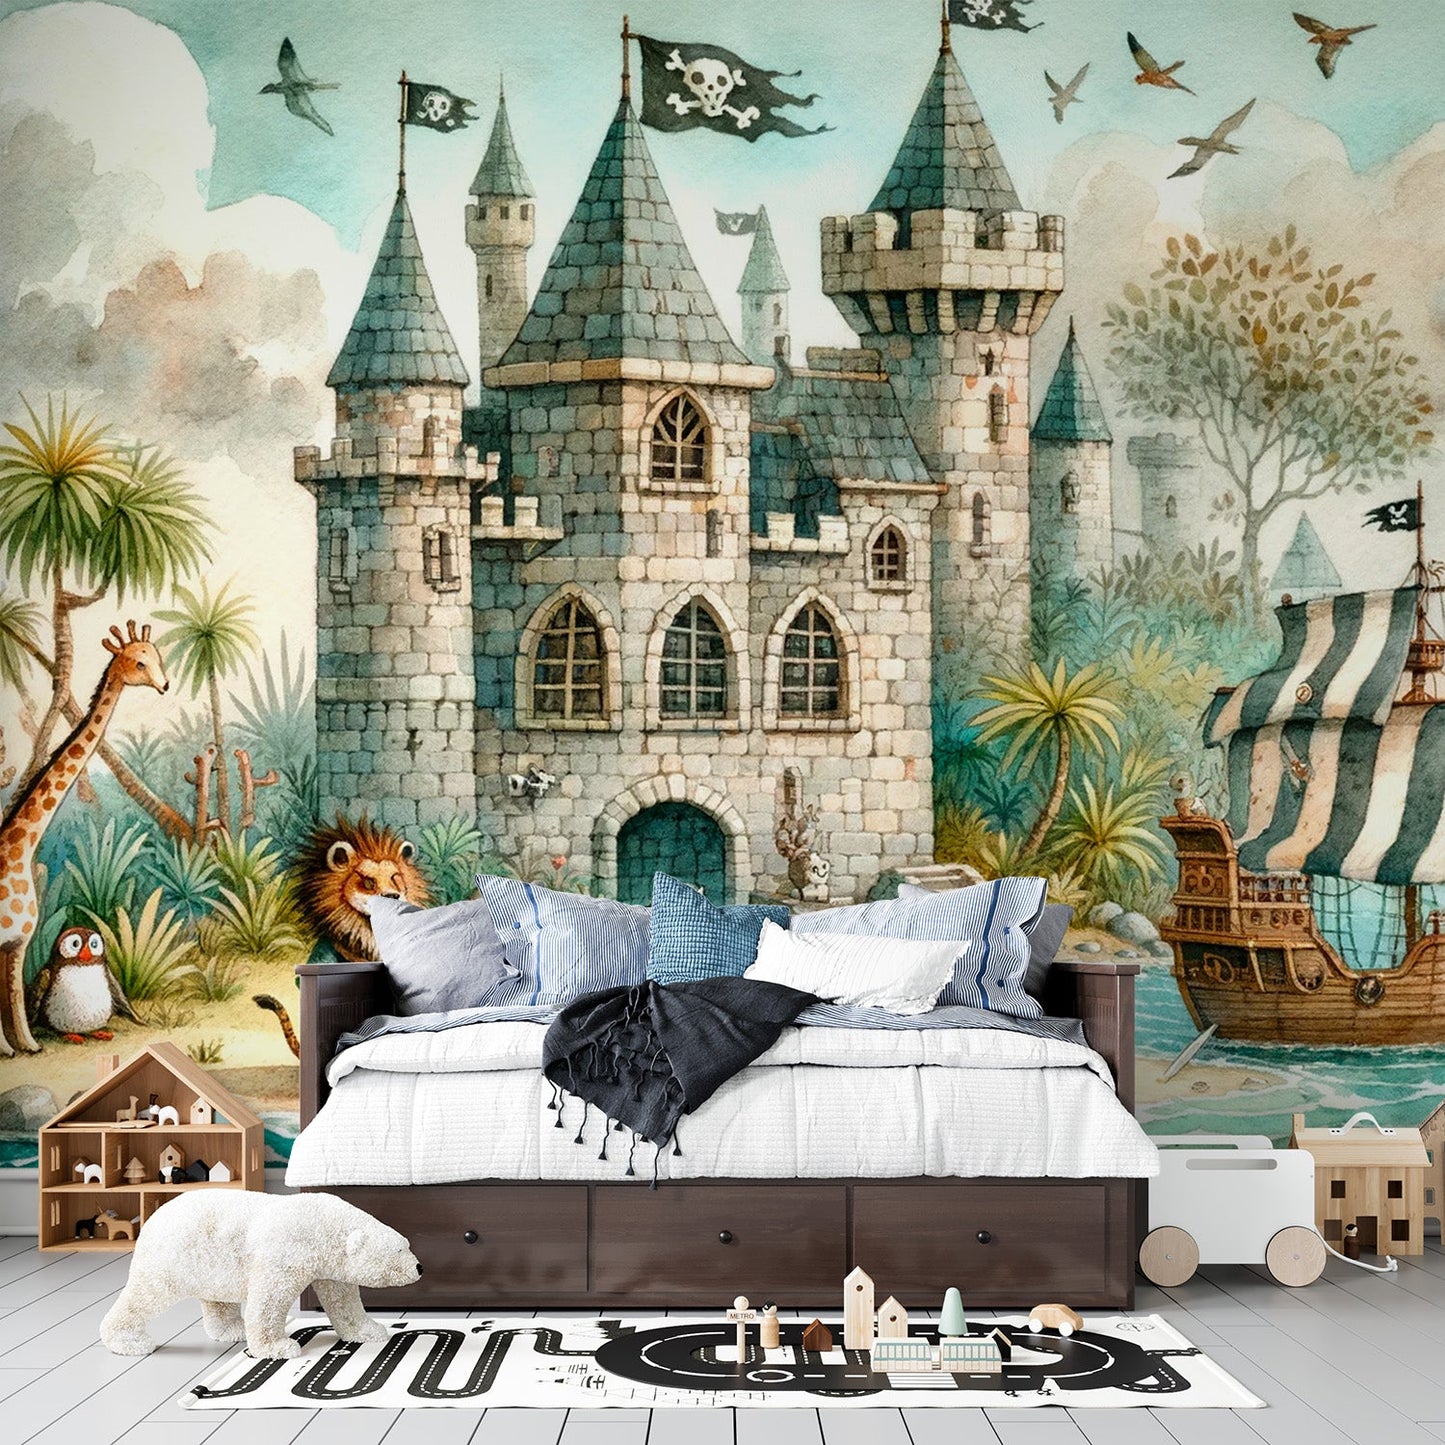 Pirate Wallpaper | Pirate Castle for Children